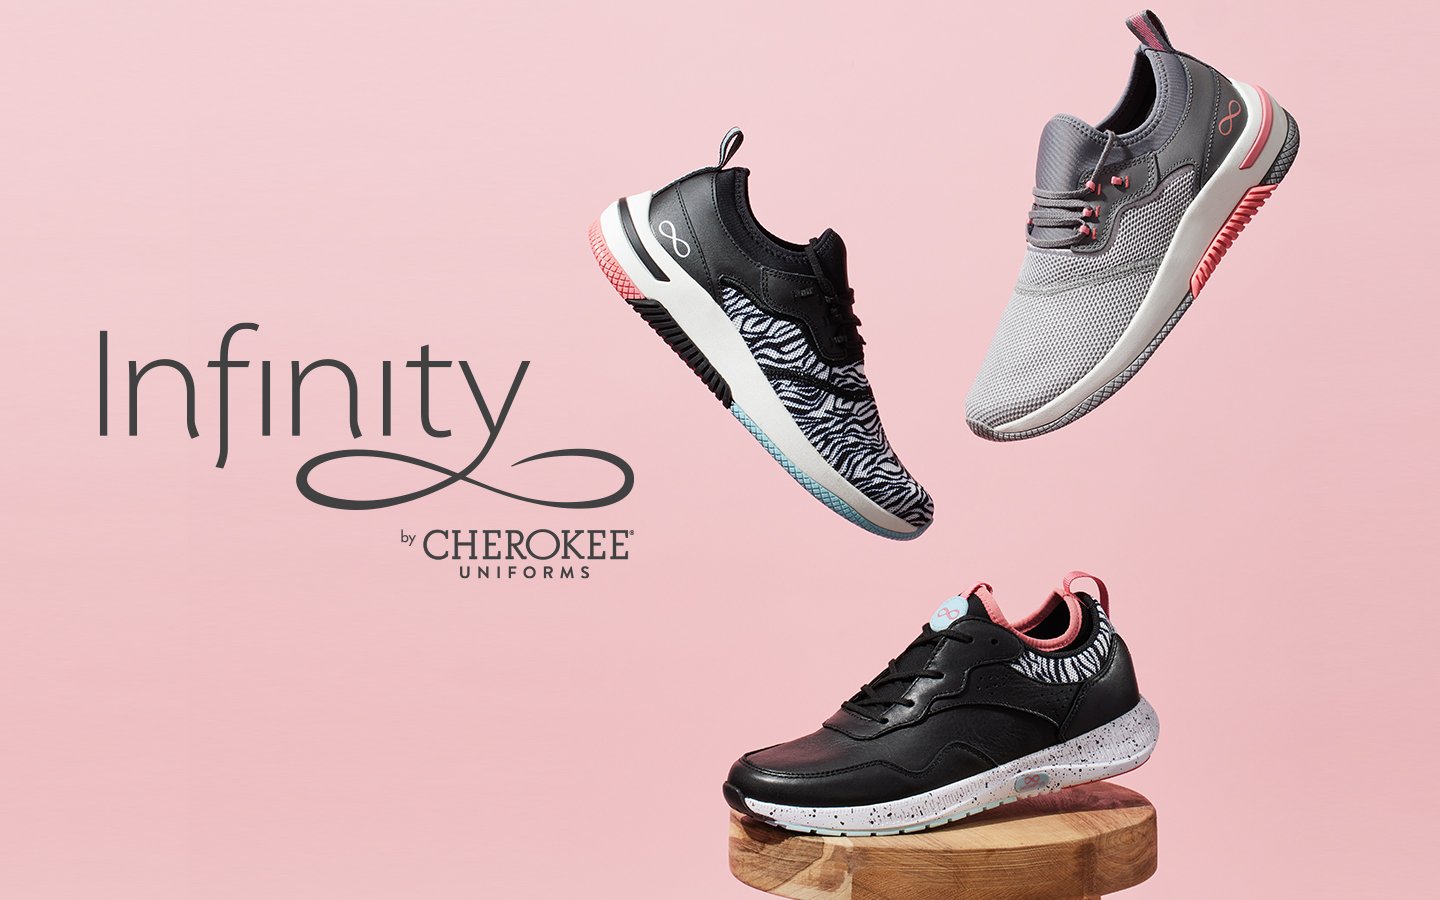 shop infinity cherokee footwear